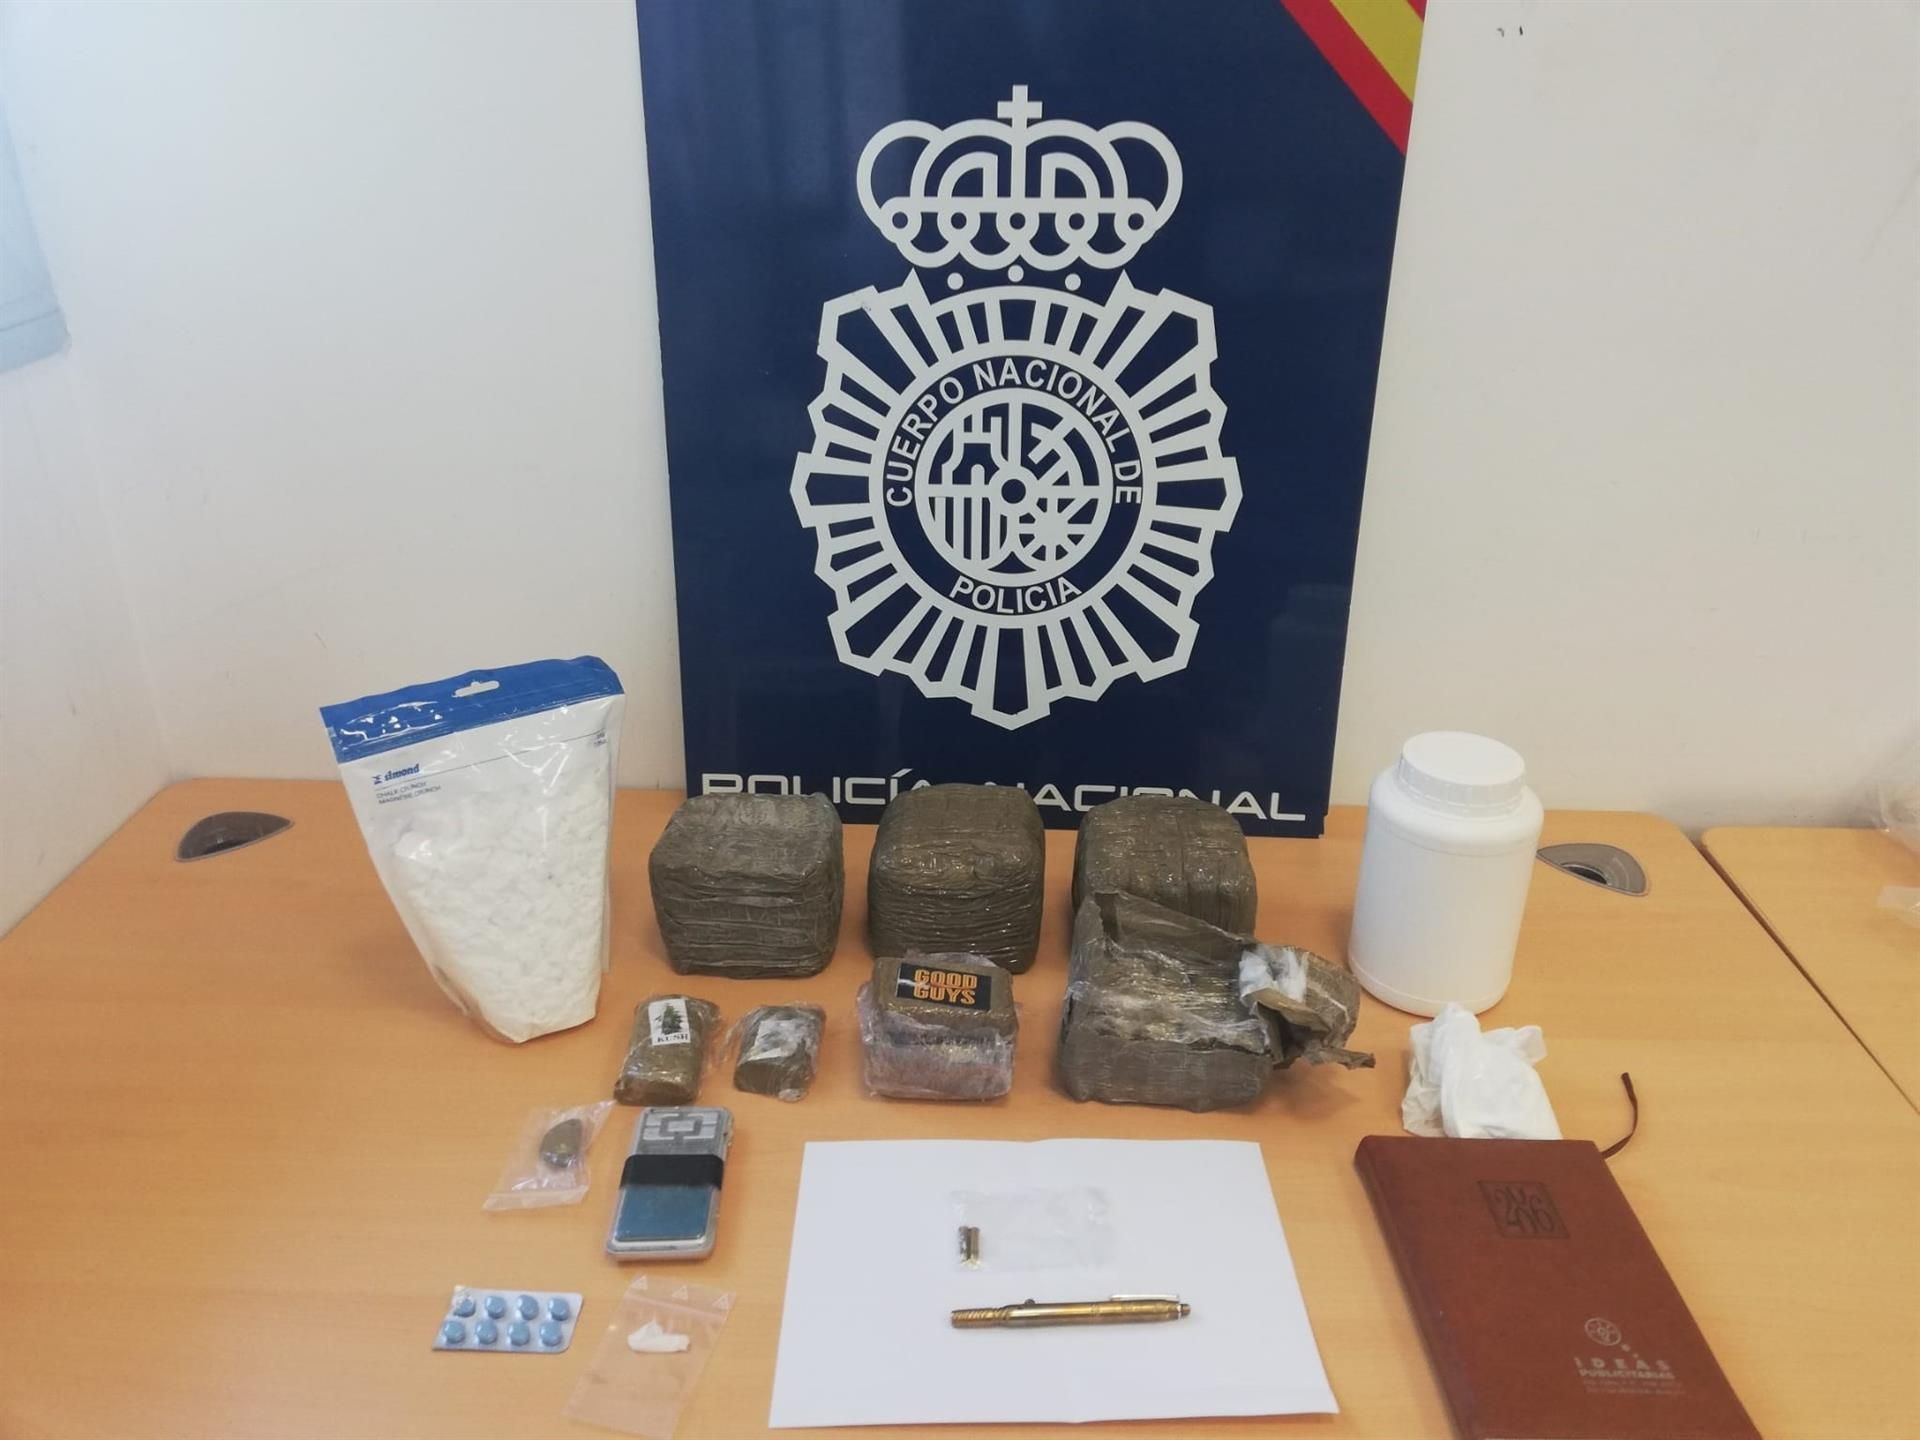 Encuentran un bolígrafo pistola en un punto de venta de droga cercano a un colegio de Alcalá de Guadaira.